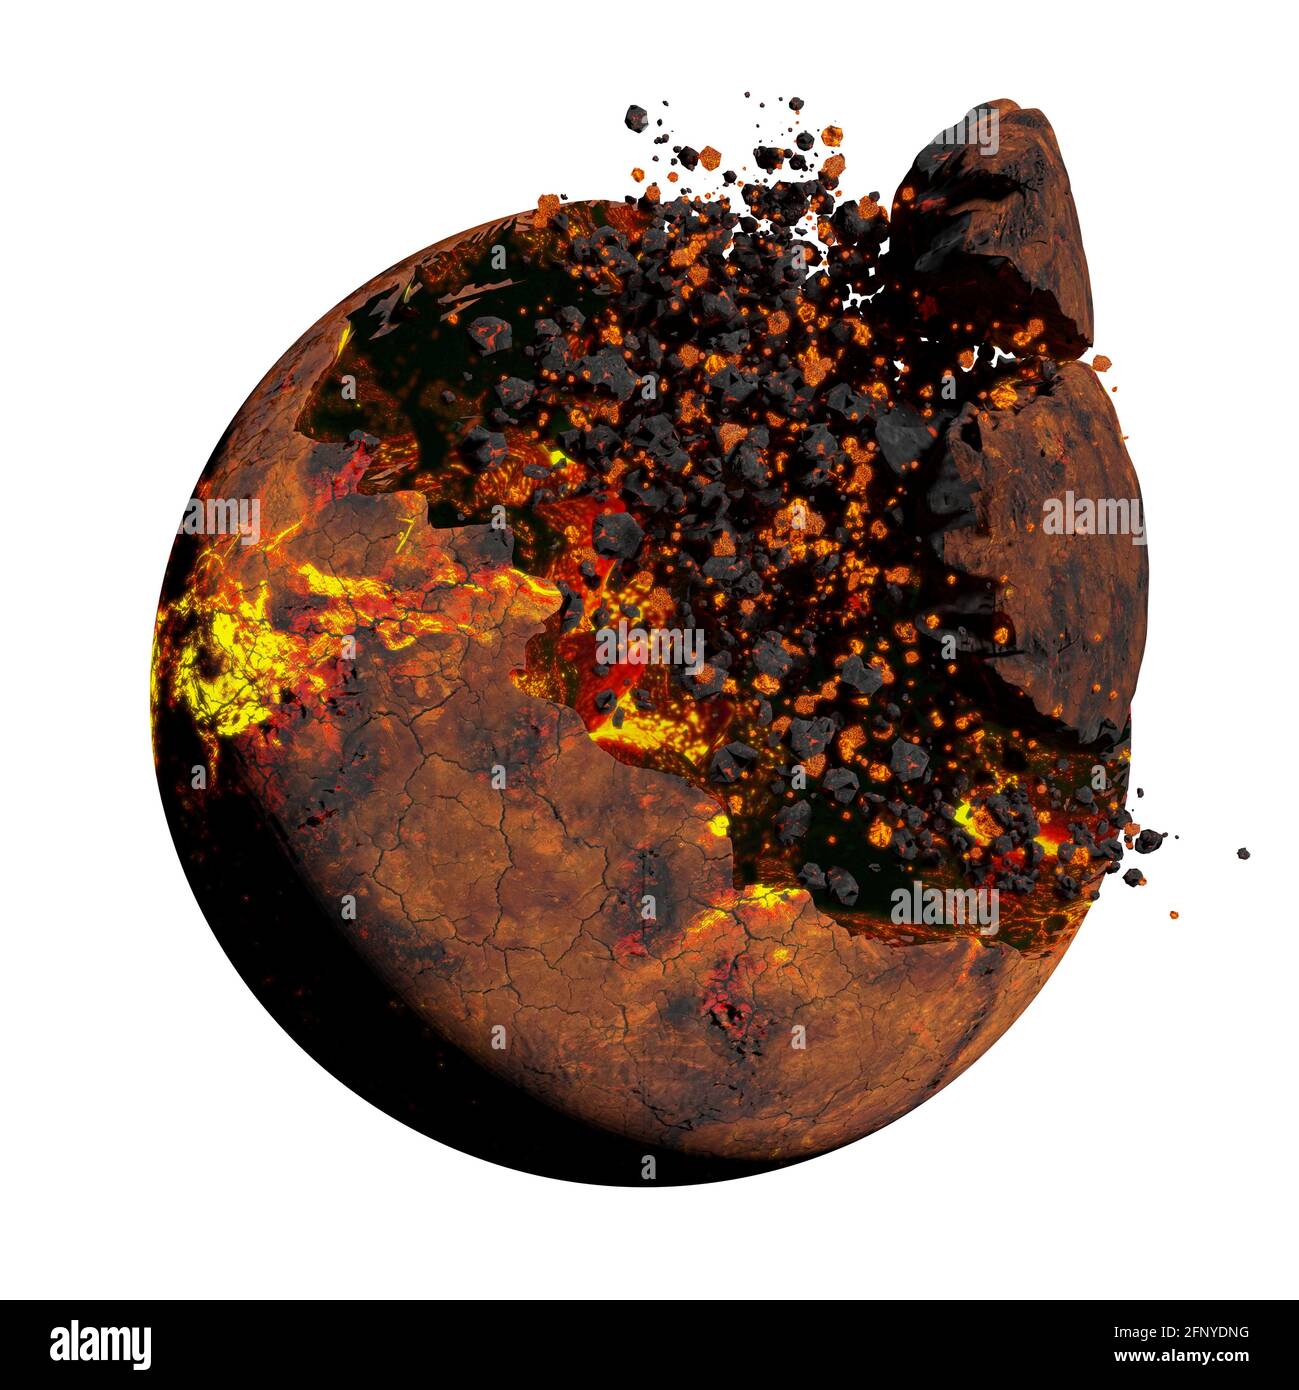 apocalypse planétaire, explosion du monde extraterrestre isolée sur fond blanc (illustration scientifique 3d) Banque D'Images